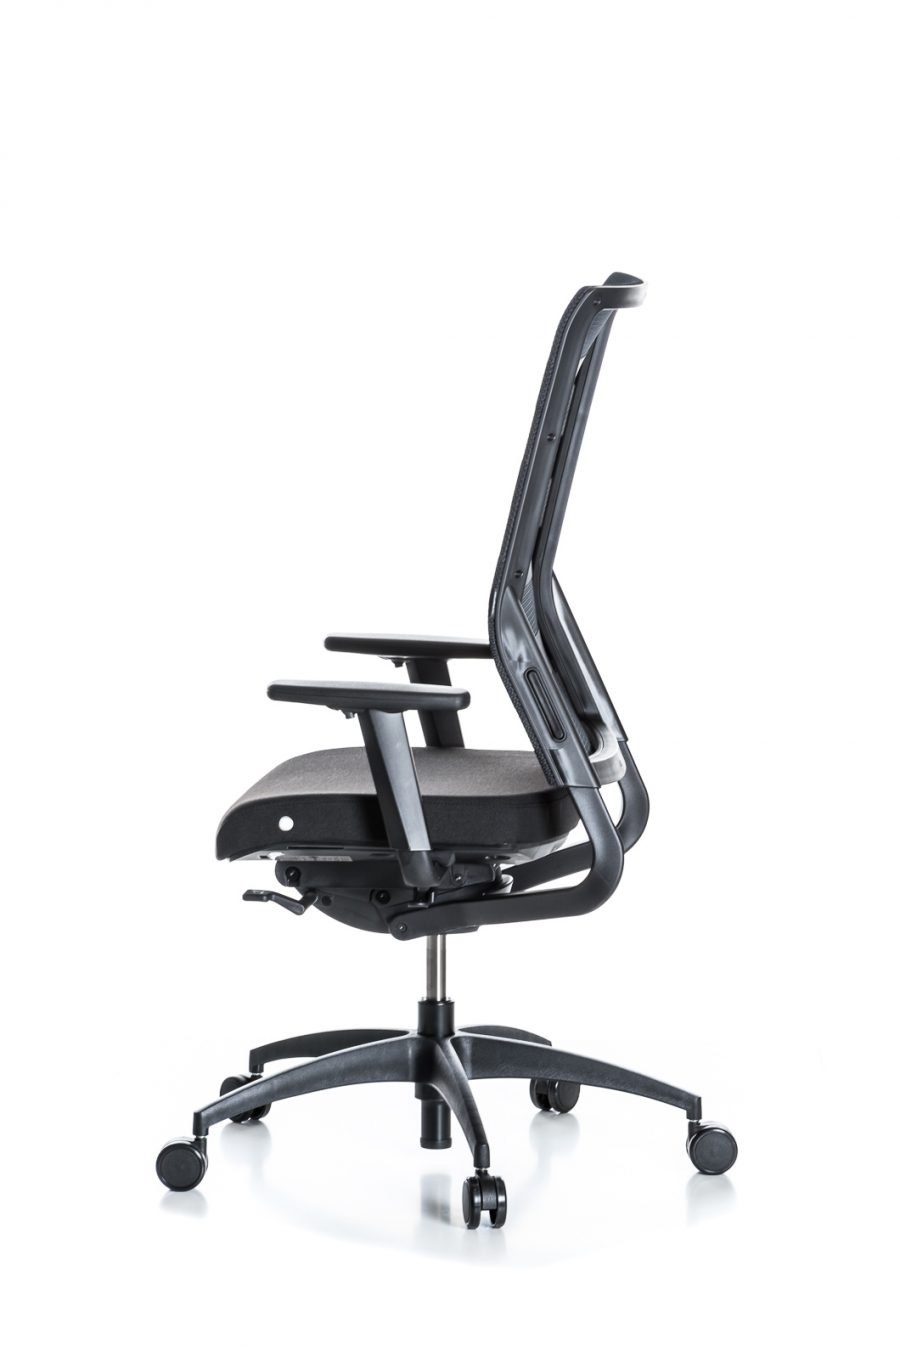 biuro kėdės, kėdė kamuolys, aktyvus sėdėjimas, aktyvaus sėdėjimo kėdė, biuro kėdė, biuro kėdės, darbo kede, darbo kėdės, ofiso kėdė, ergonomiška kėdė, ergonominis sėdėjimas, ergonomika, ergonominė darbo vieta, namų biuras,